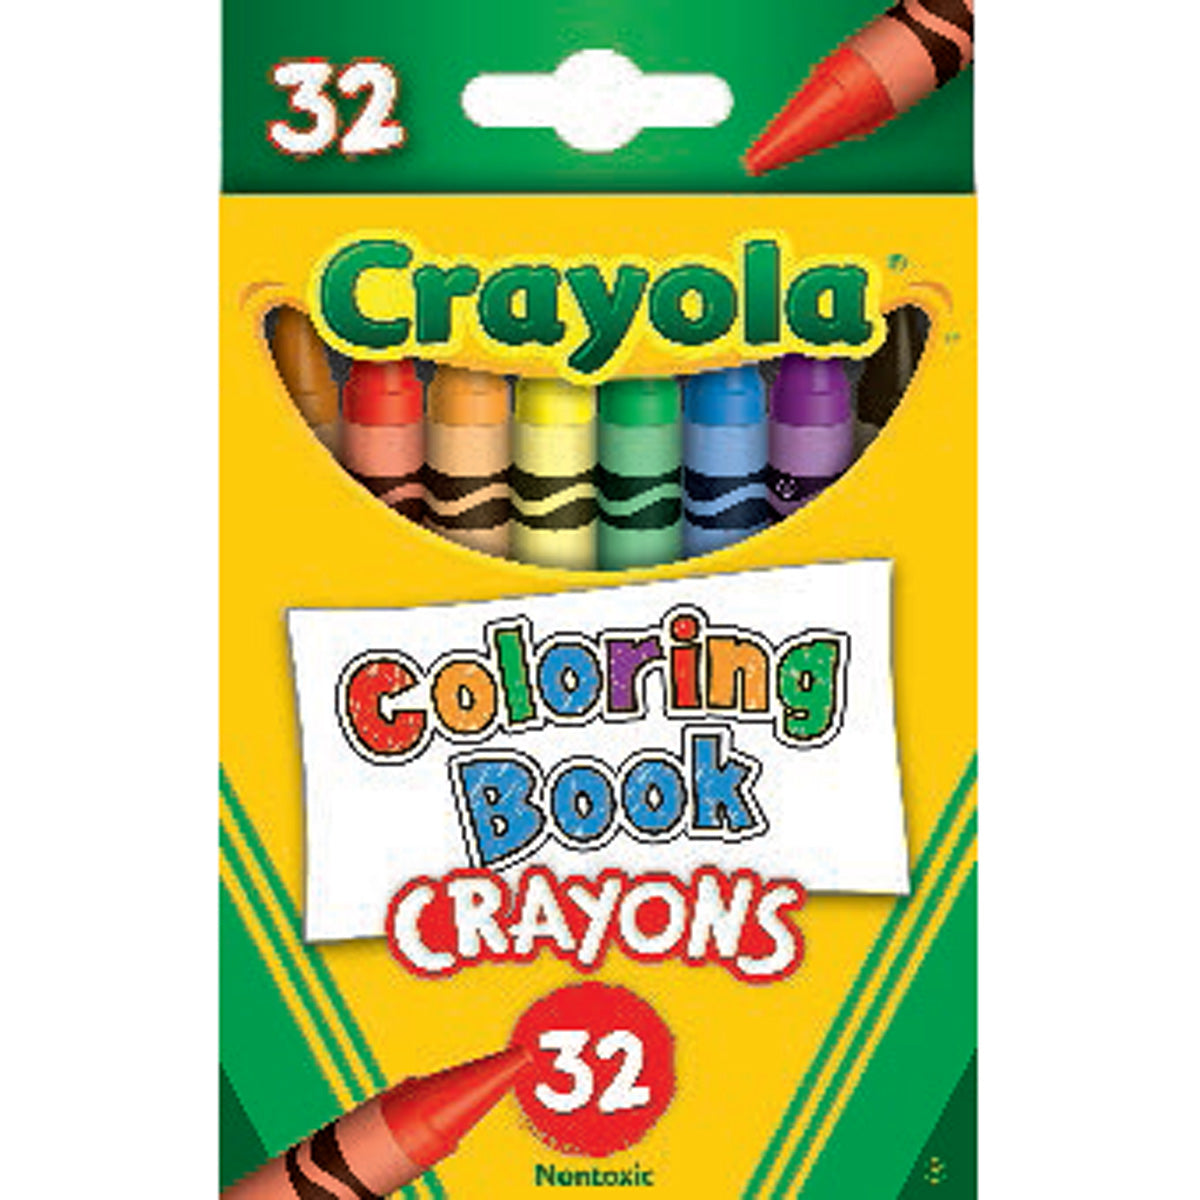 Crayola 32 ct. Coloring Book Crayons